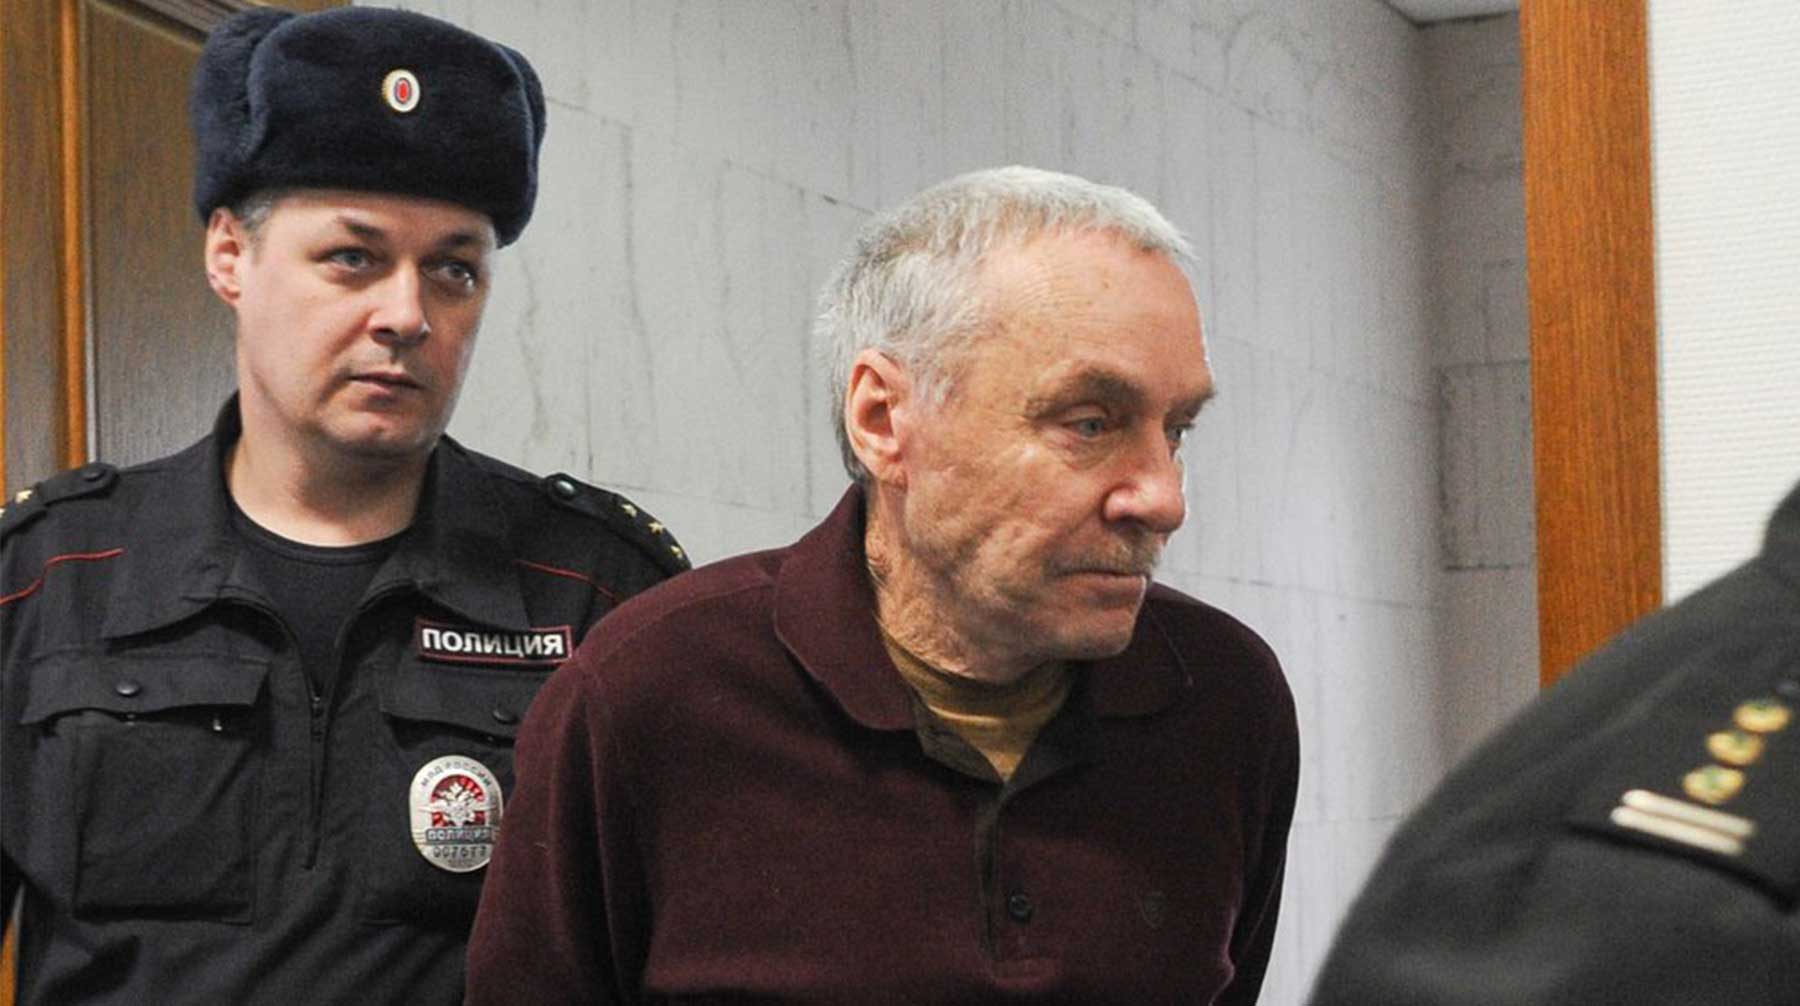 Суд признал Виктора Захарченко виновным в растрате средств банка «Московское ипотечное агентство» Виктор Захарченко